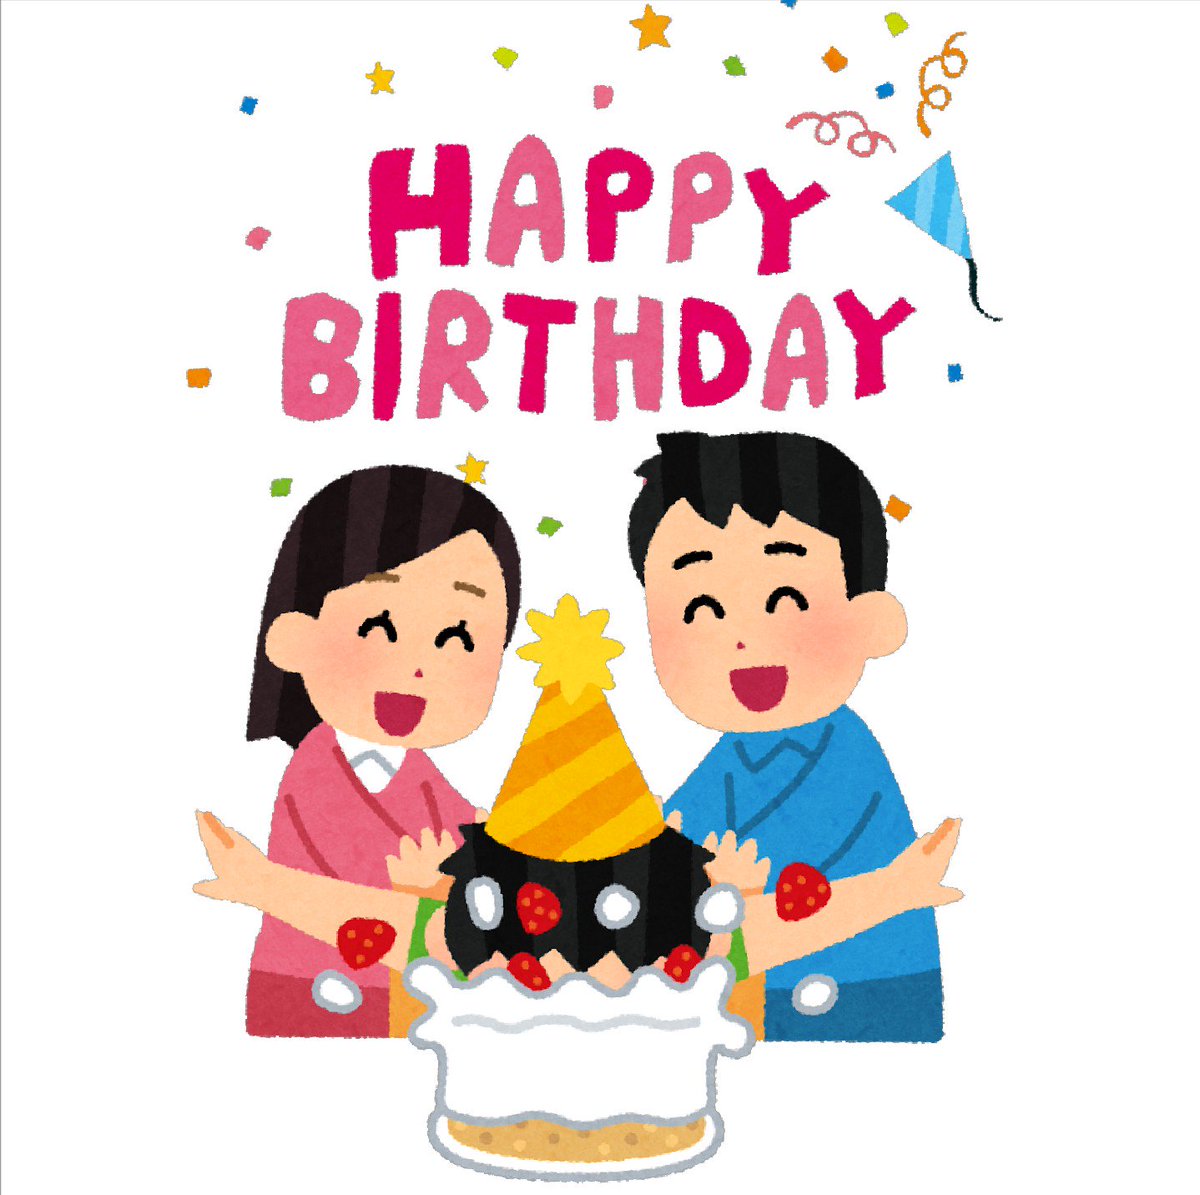 まいチクをいらすとやで再現 お誕生日おめでとうございます 使ったイラスト 2枚 誕生日のイラスト Happy Birthday タイトル文字 誕生日ケーキに顔を突っ込まれる人のイラスト